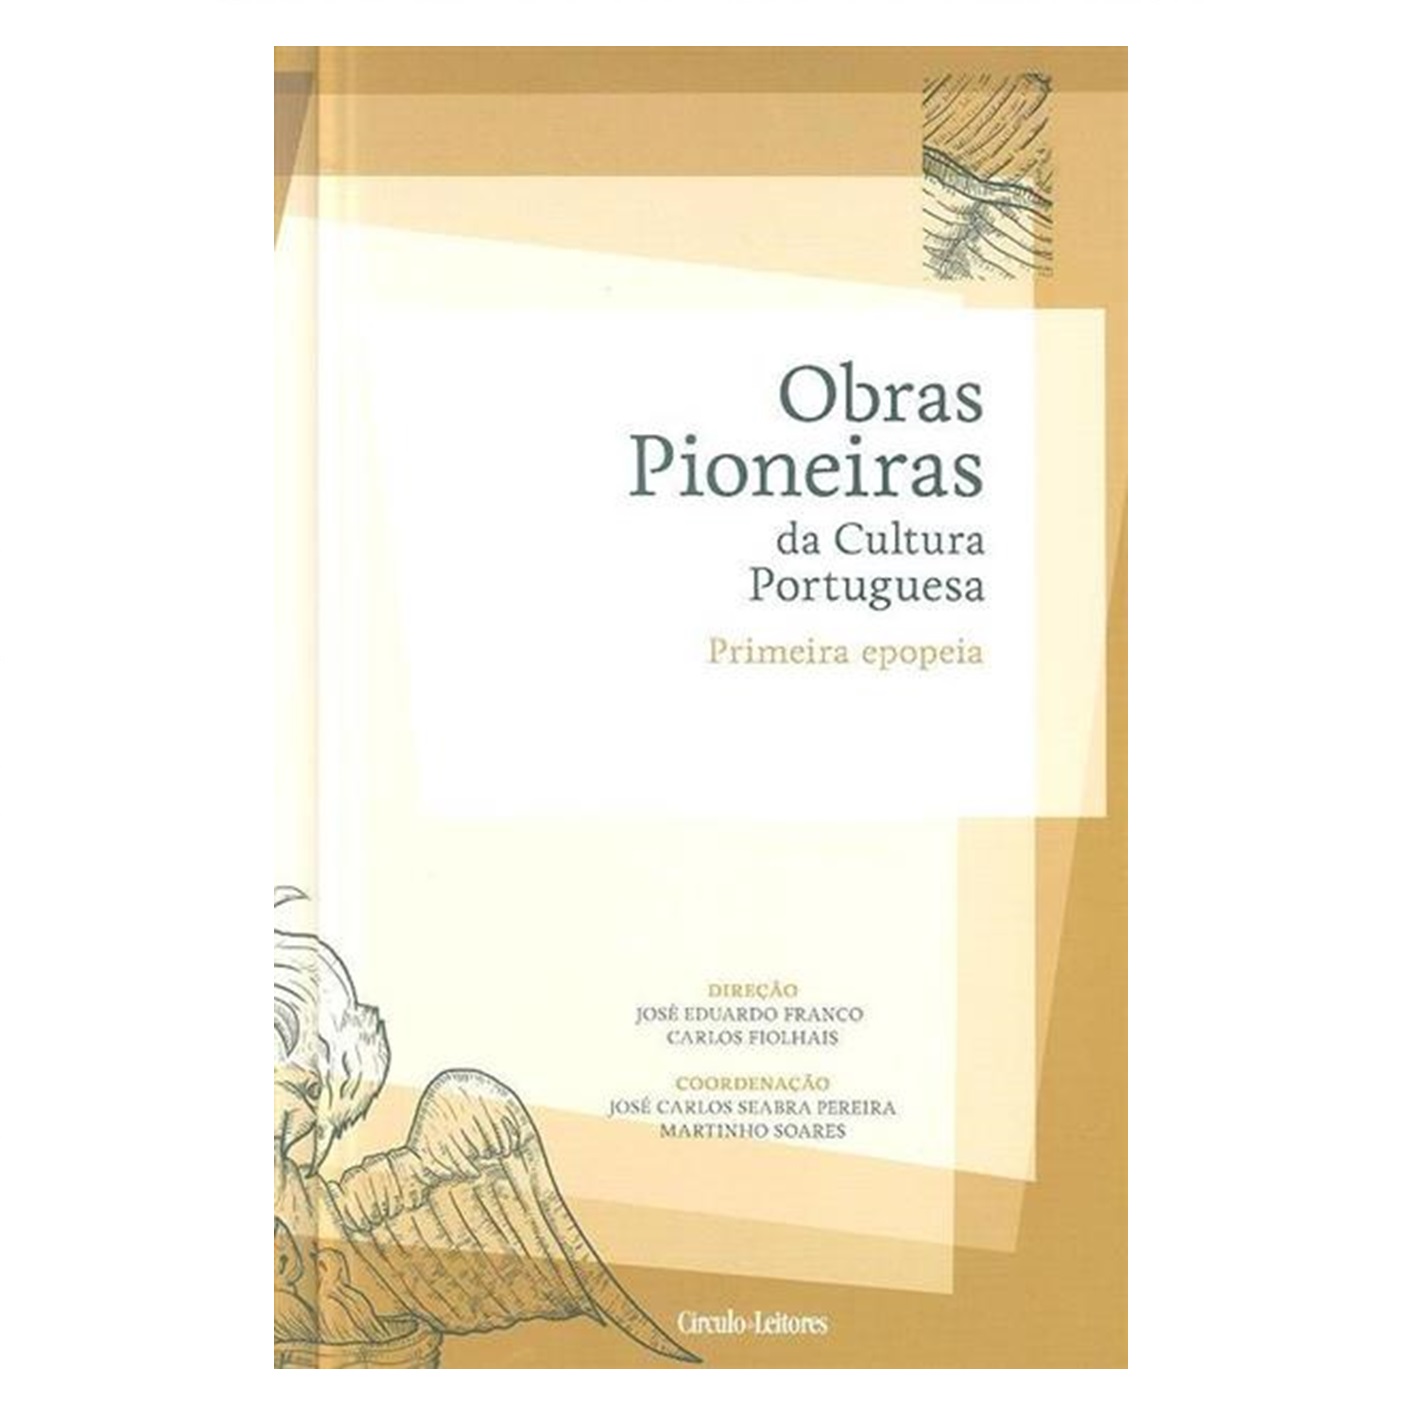 Obras Pioneiras da Cultura Portuguesa: primeira epopeia